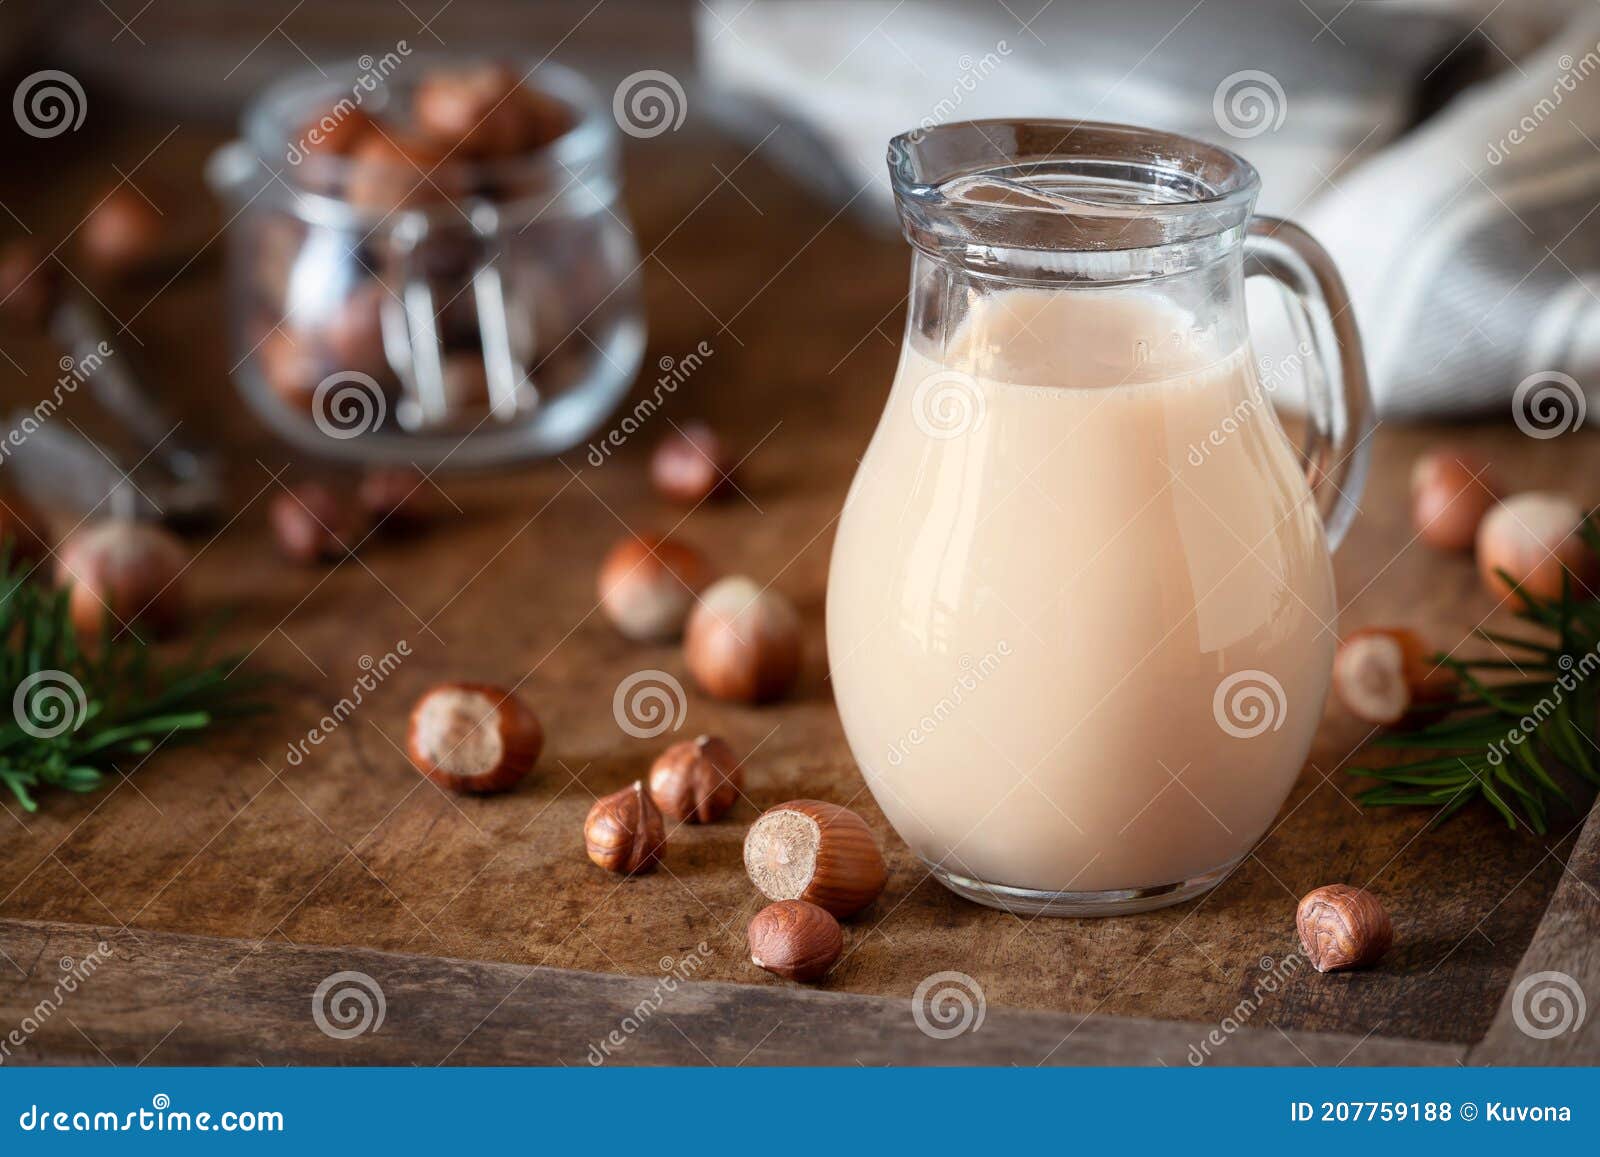 hazelnut milk beverage in a jar